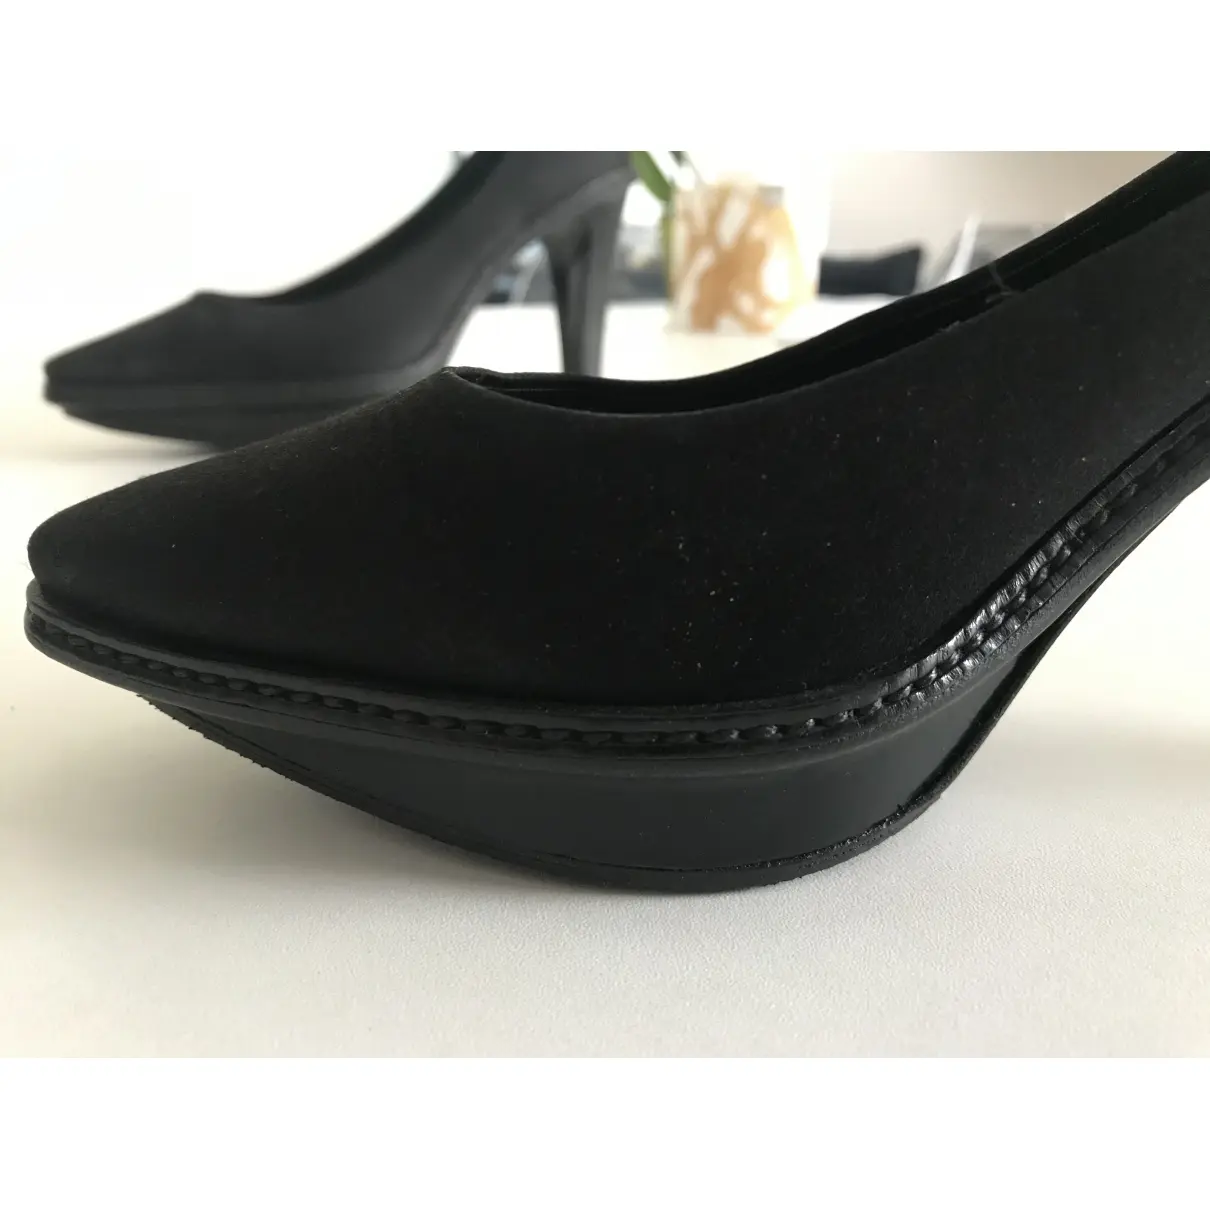 Velvet heels Celine